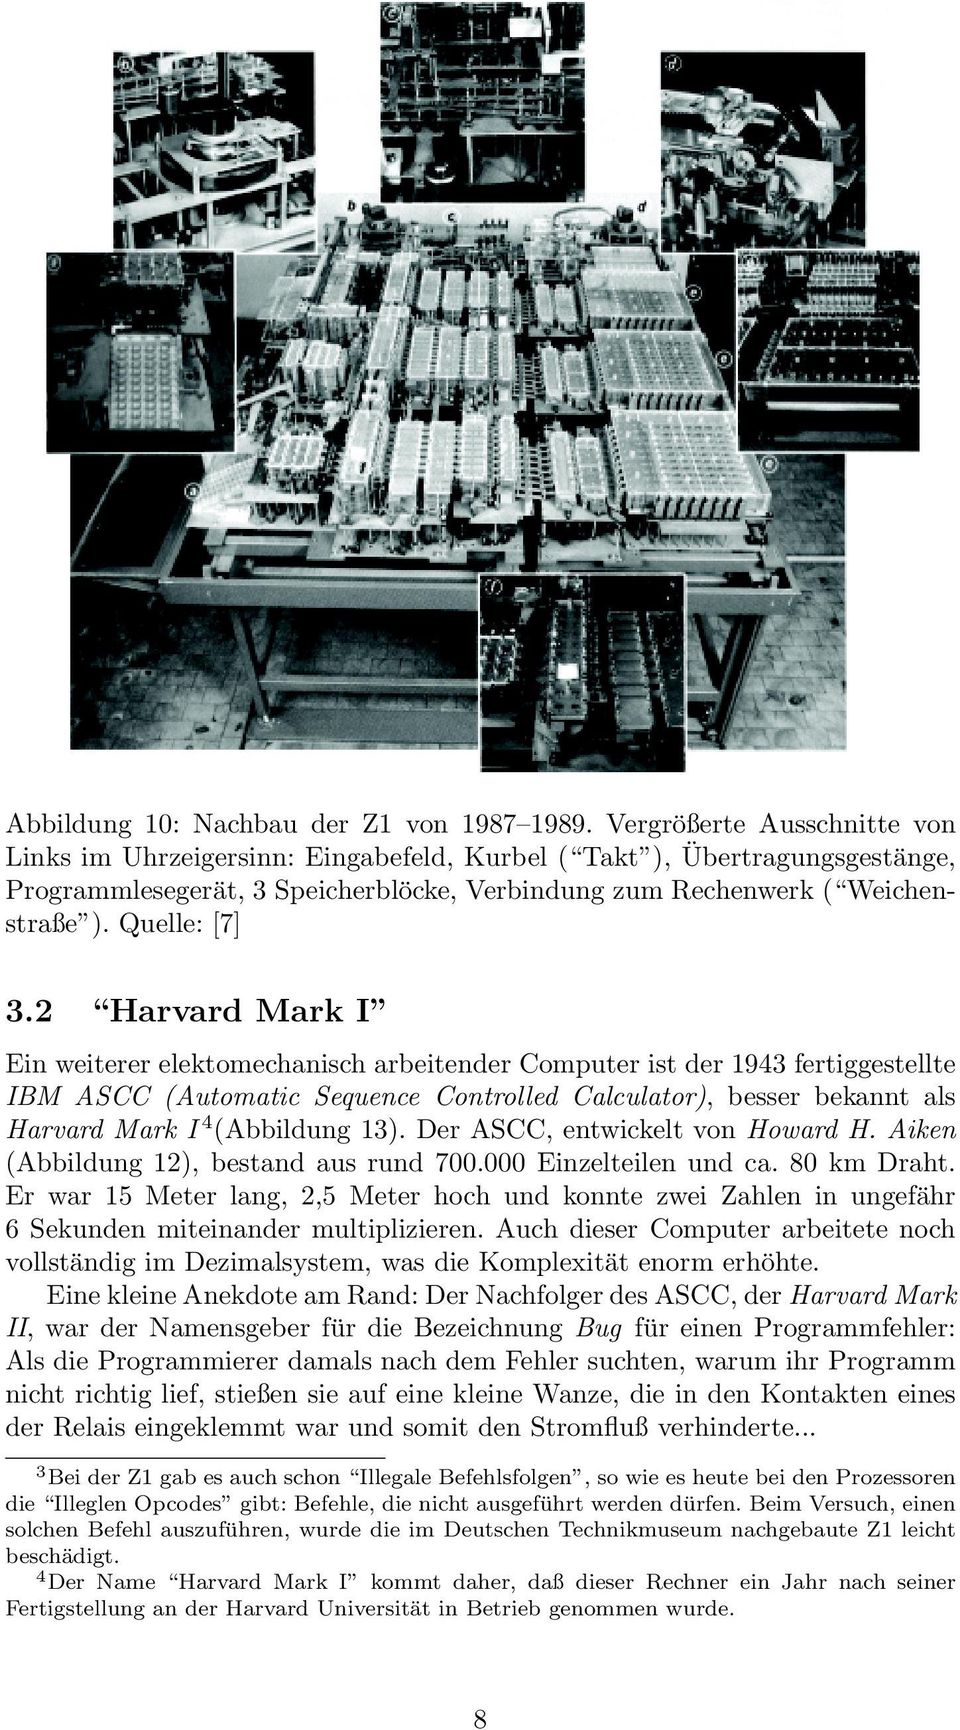 2 Harvard Mark I Ein weiterer elektomechanisch arbeitender Computer ist der 1943 fertiggestellte IBM ASCC (Automatic Sequence Controlled Calculator), besser bekannt als Harvard Mark I 4 (Abbildung